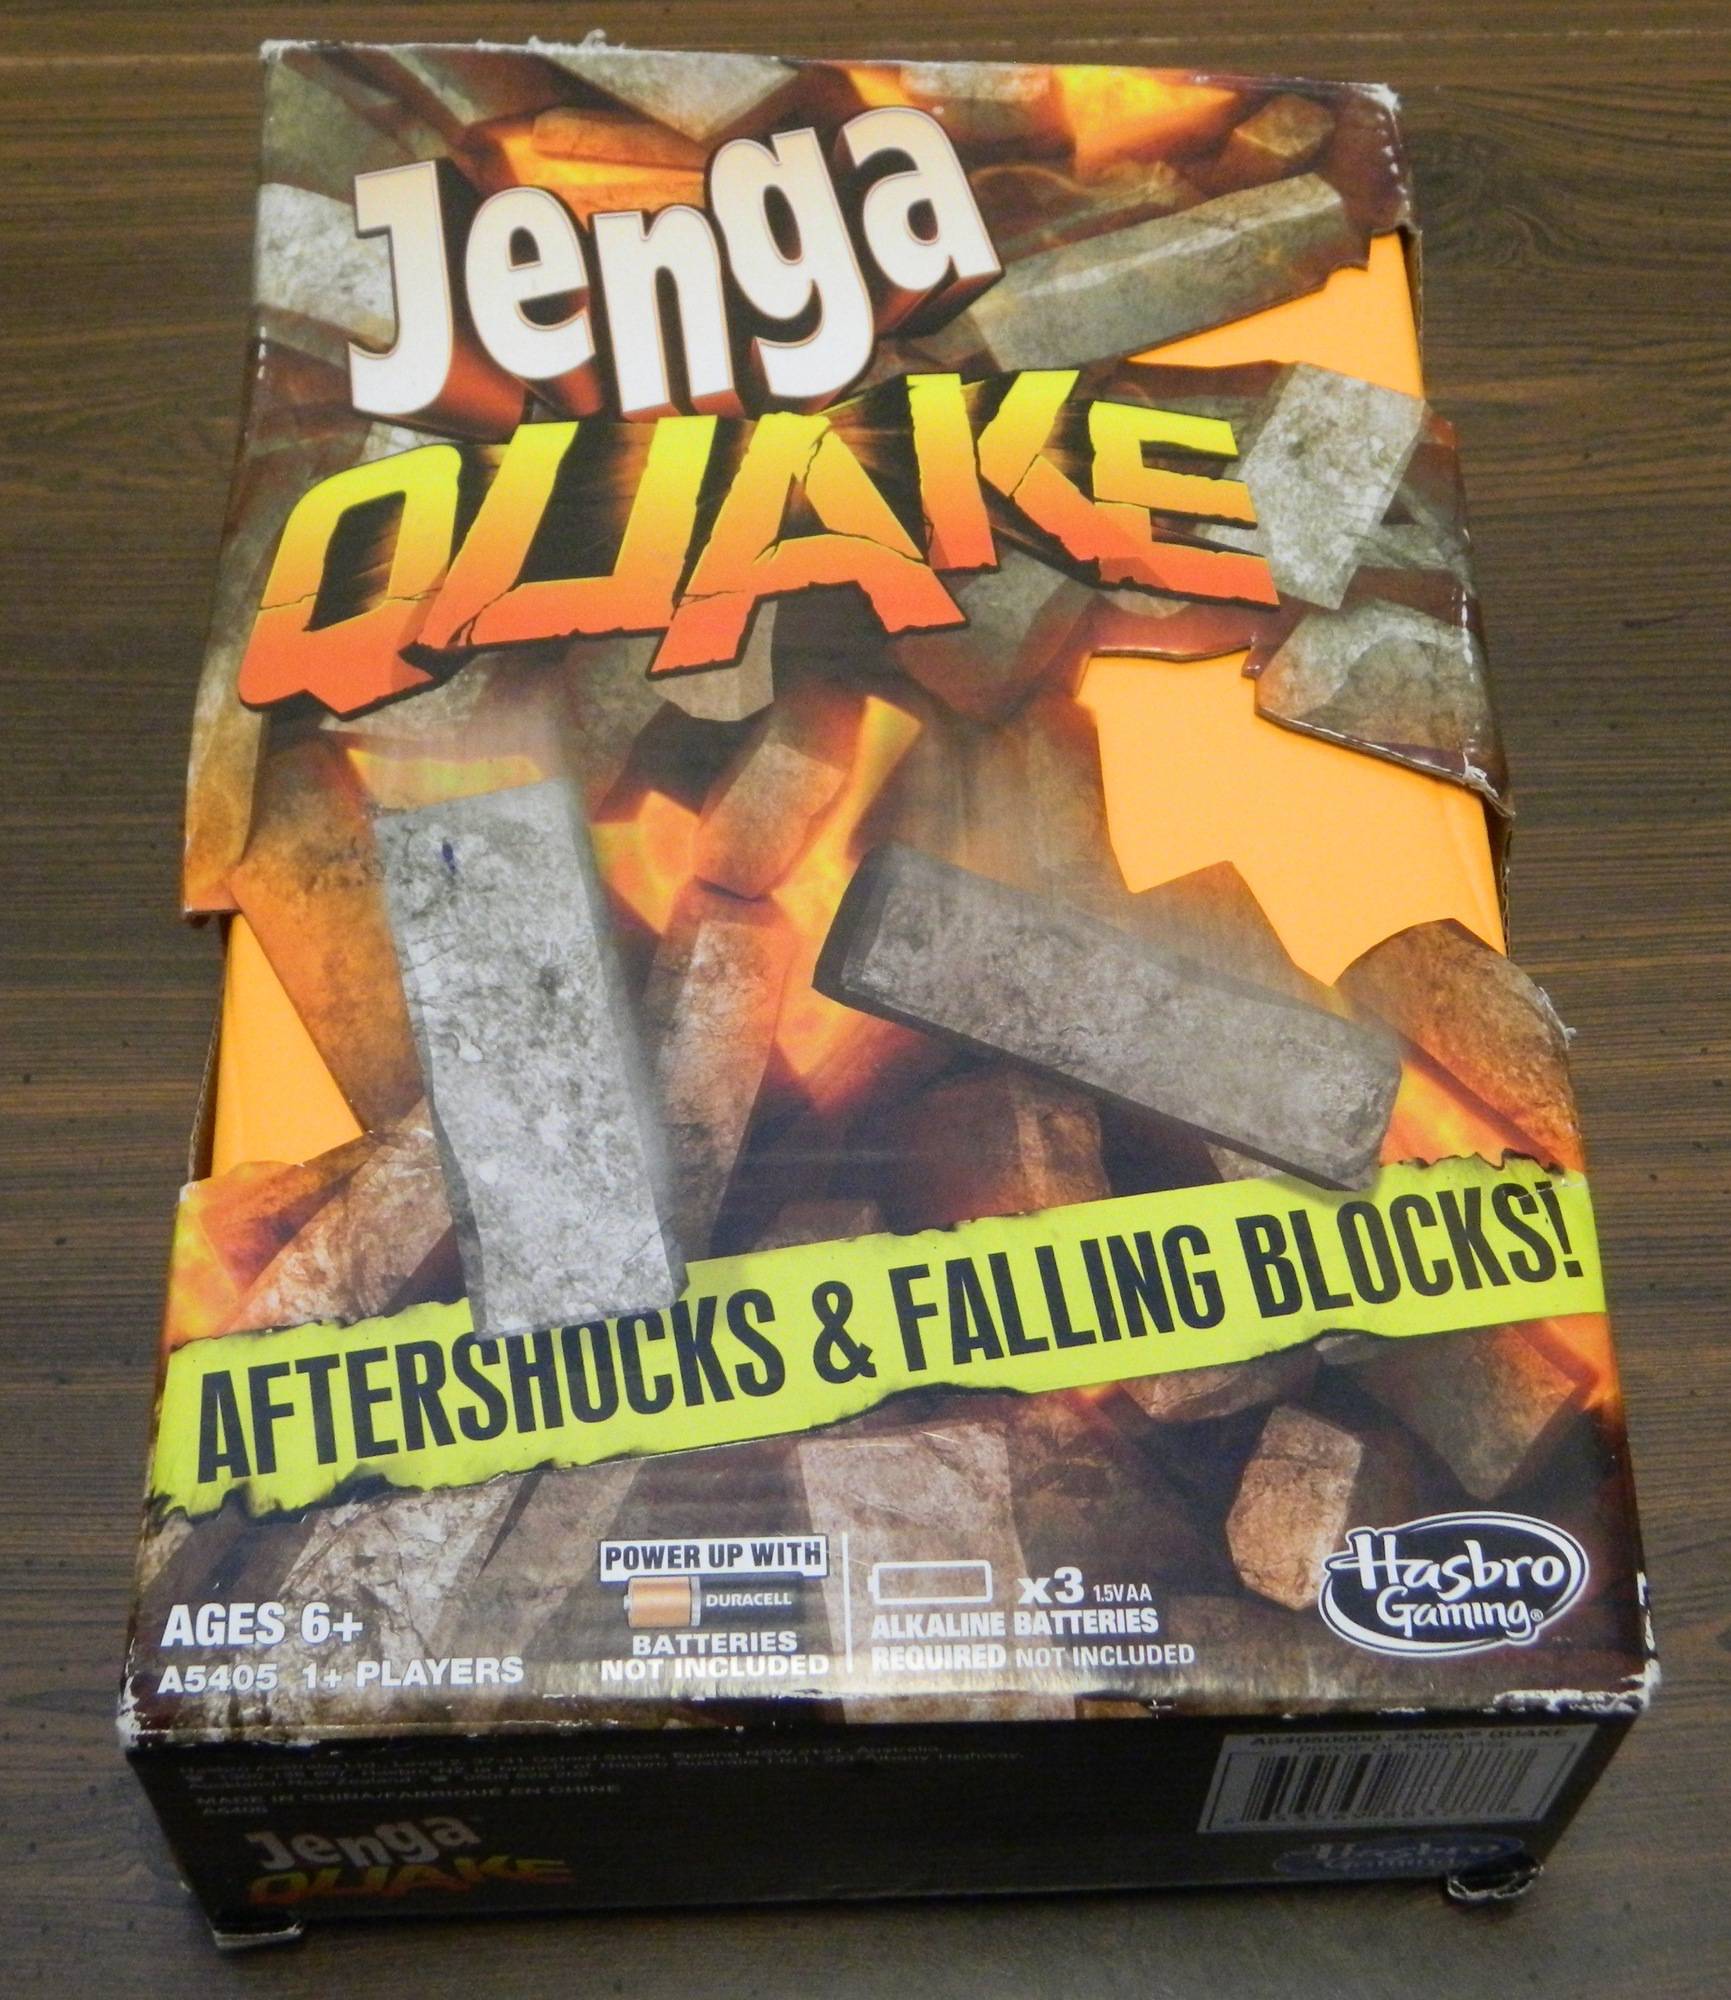 Box for Jenga Quake